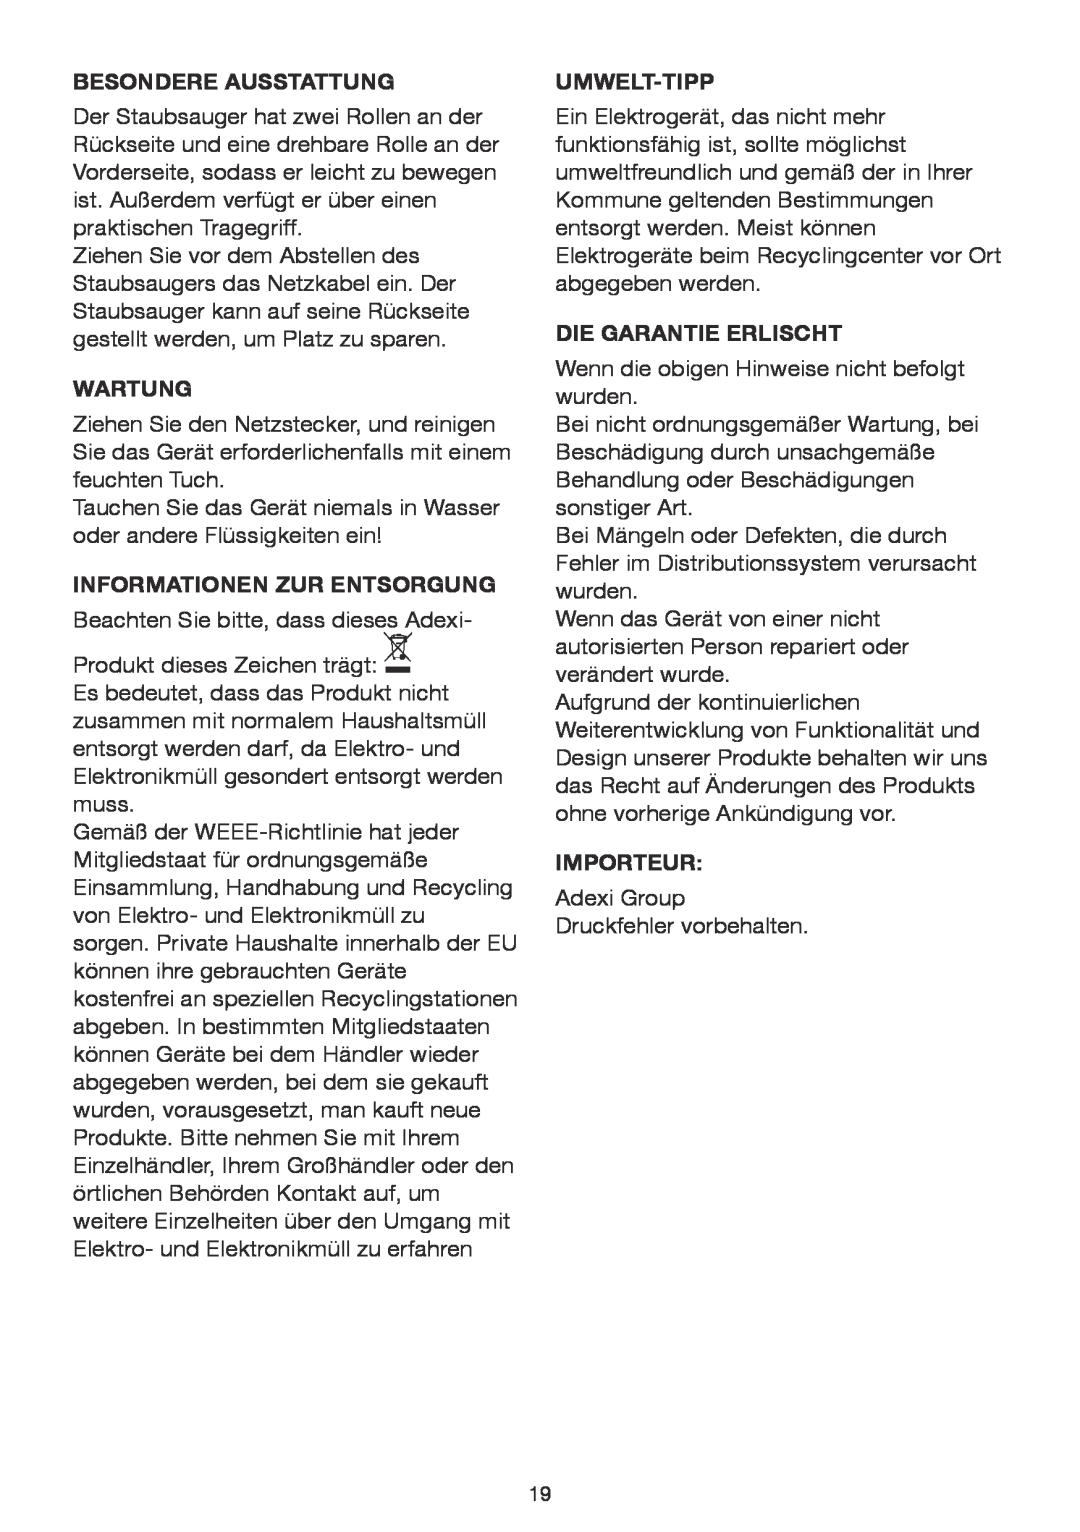 Melissa 640-074 manual Besondere Ausstattung, Wartung, Informationen Zur Entsorgung, Umwelt-Tipp, Die Garantie Erlischt 